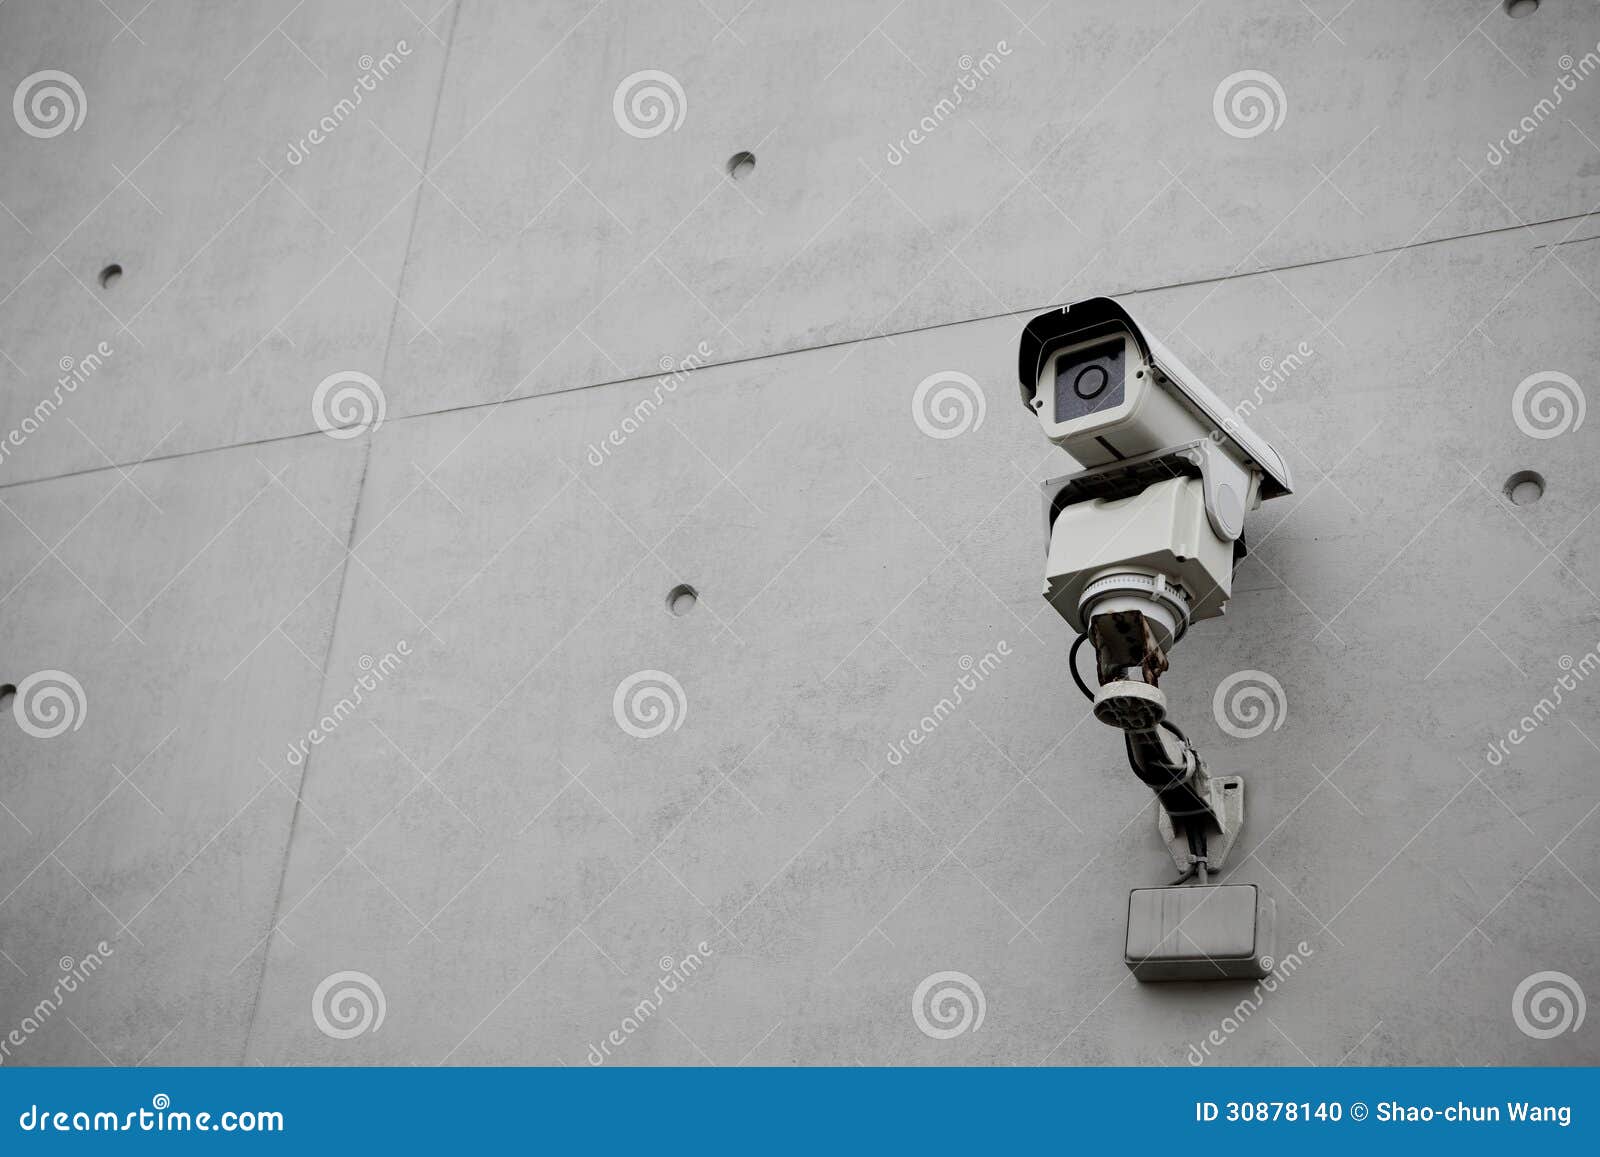 Cámara Seguridad De La Vigilancia Con El Muro De Cemento Foto de archivo - Imagen de proteja, 30878140